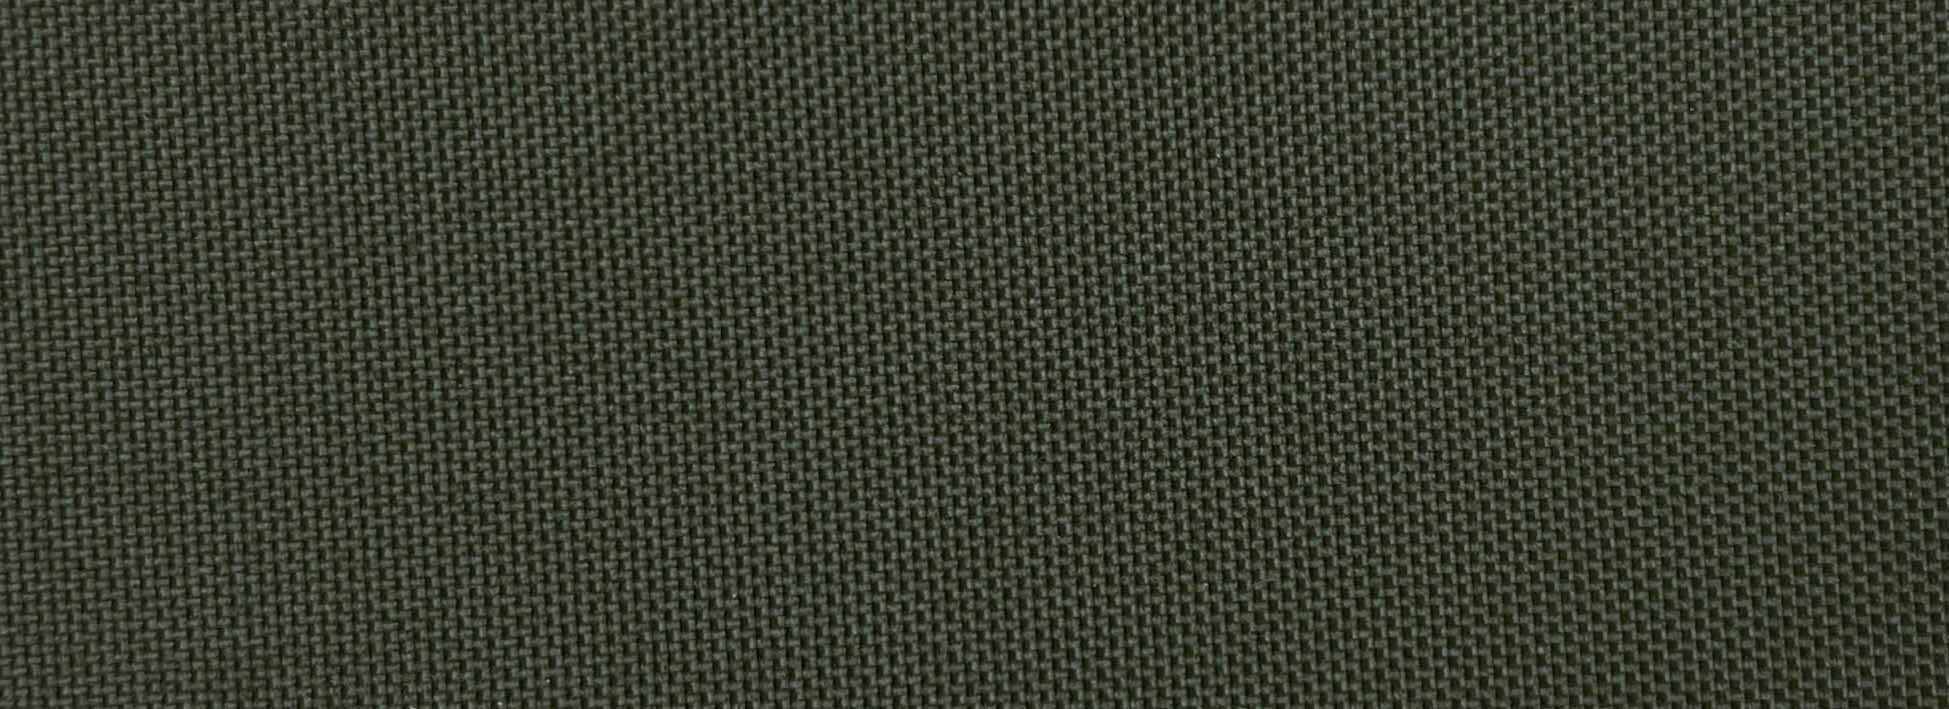 Army Green Fabric Impression